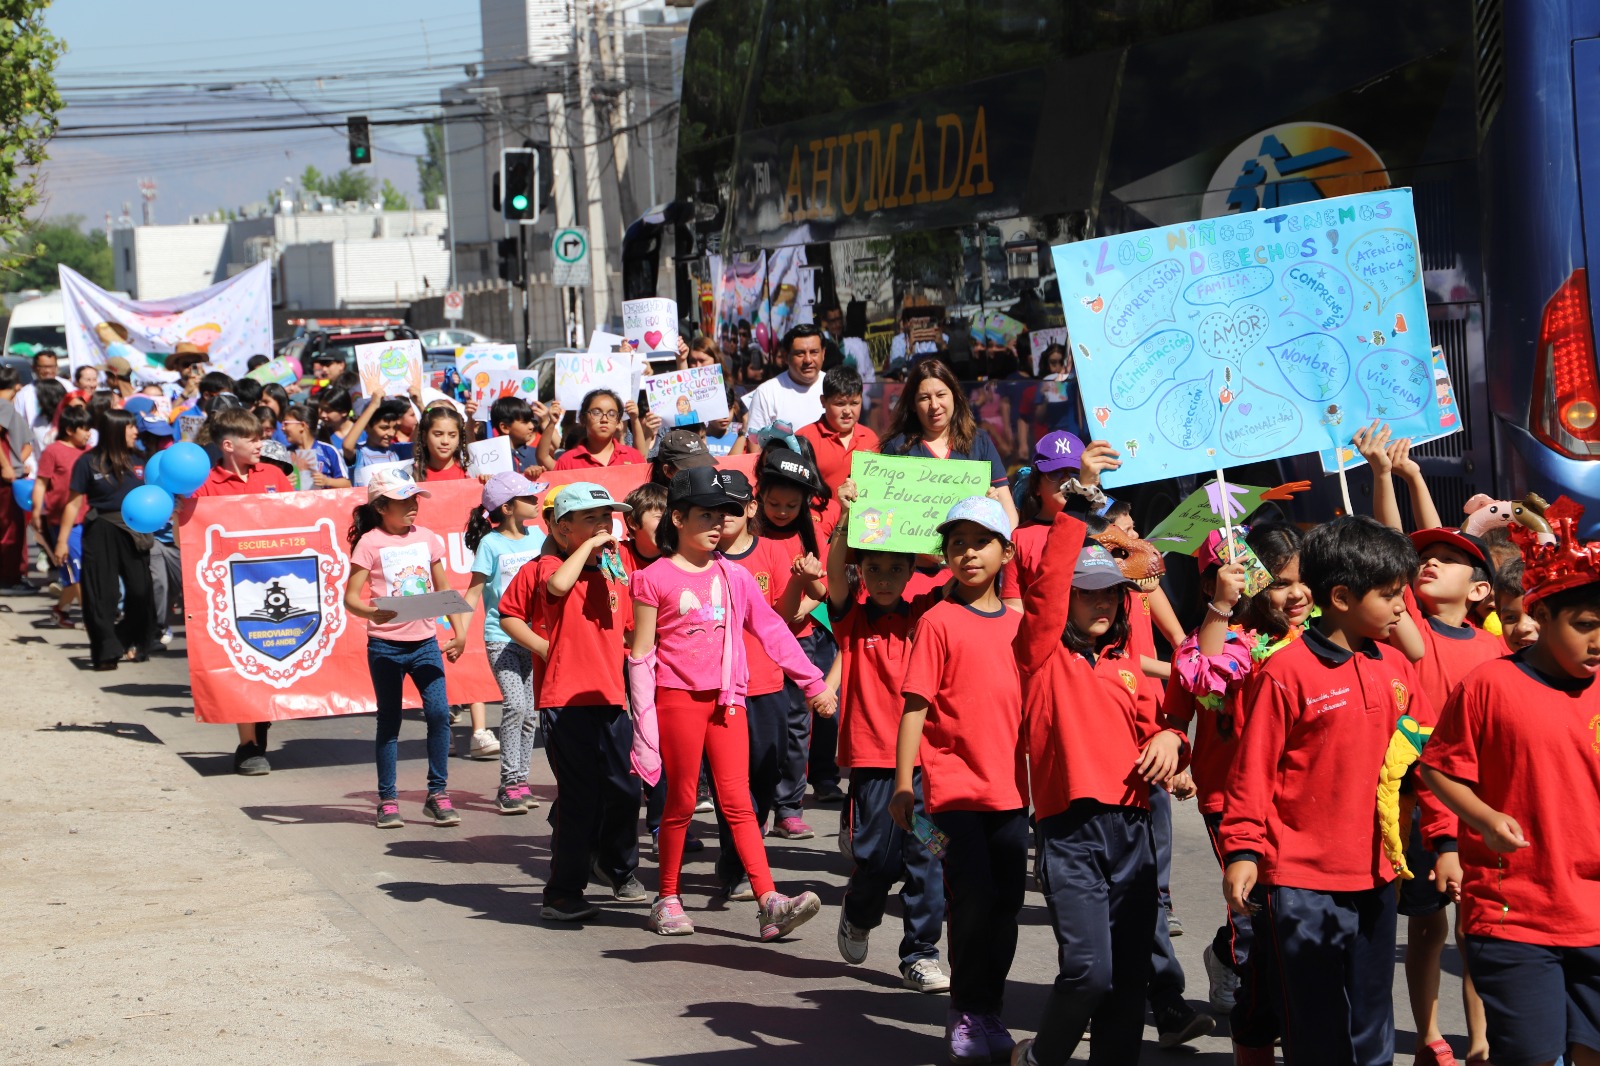 LOS ANDES: Caravana de la Niñez convocó a más de 400 niños y jóvenes en Los Andes